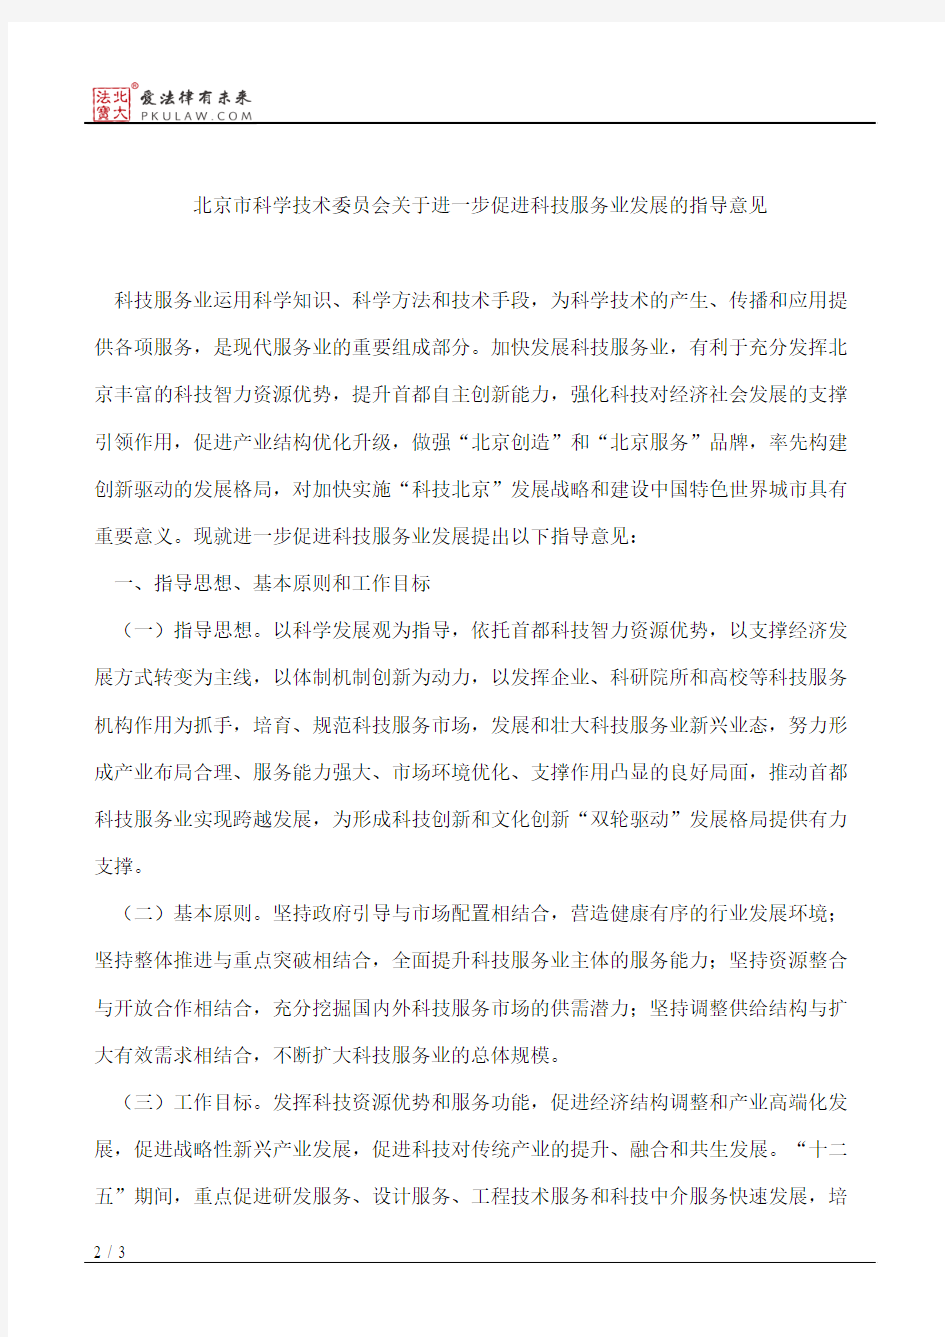 北京市科学技术委员会关于印发《北京市科学技术委员会关于进一步